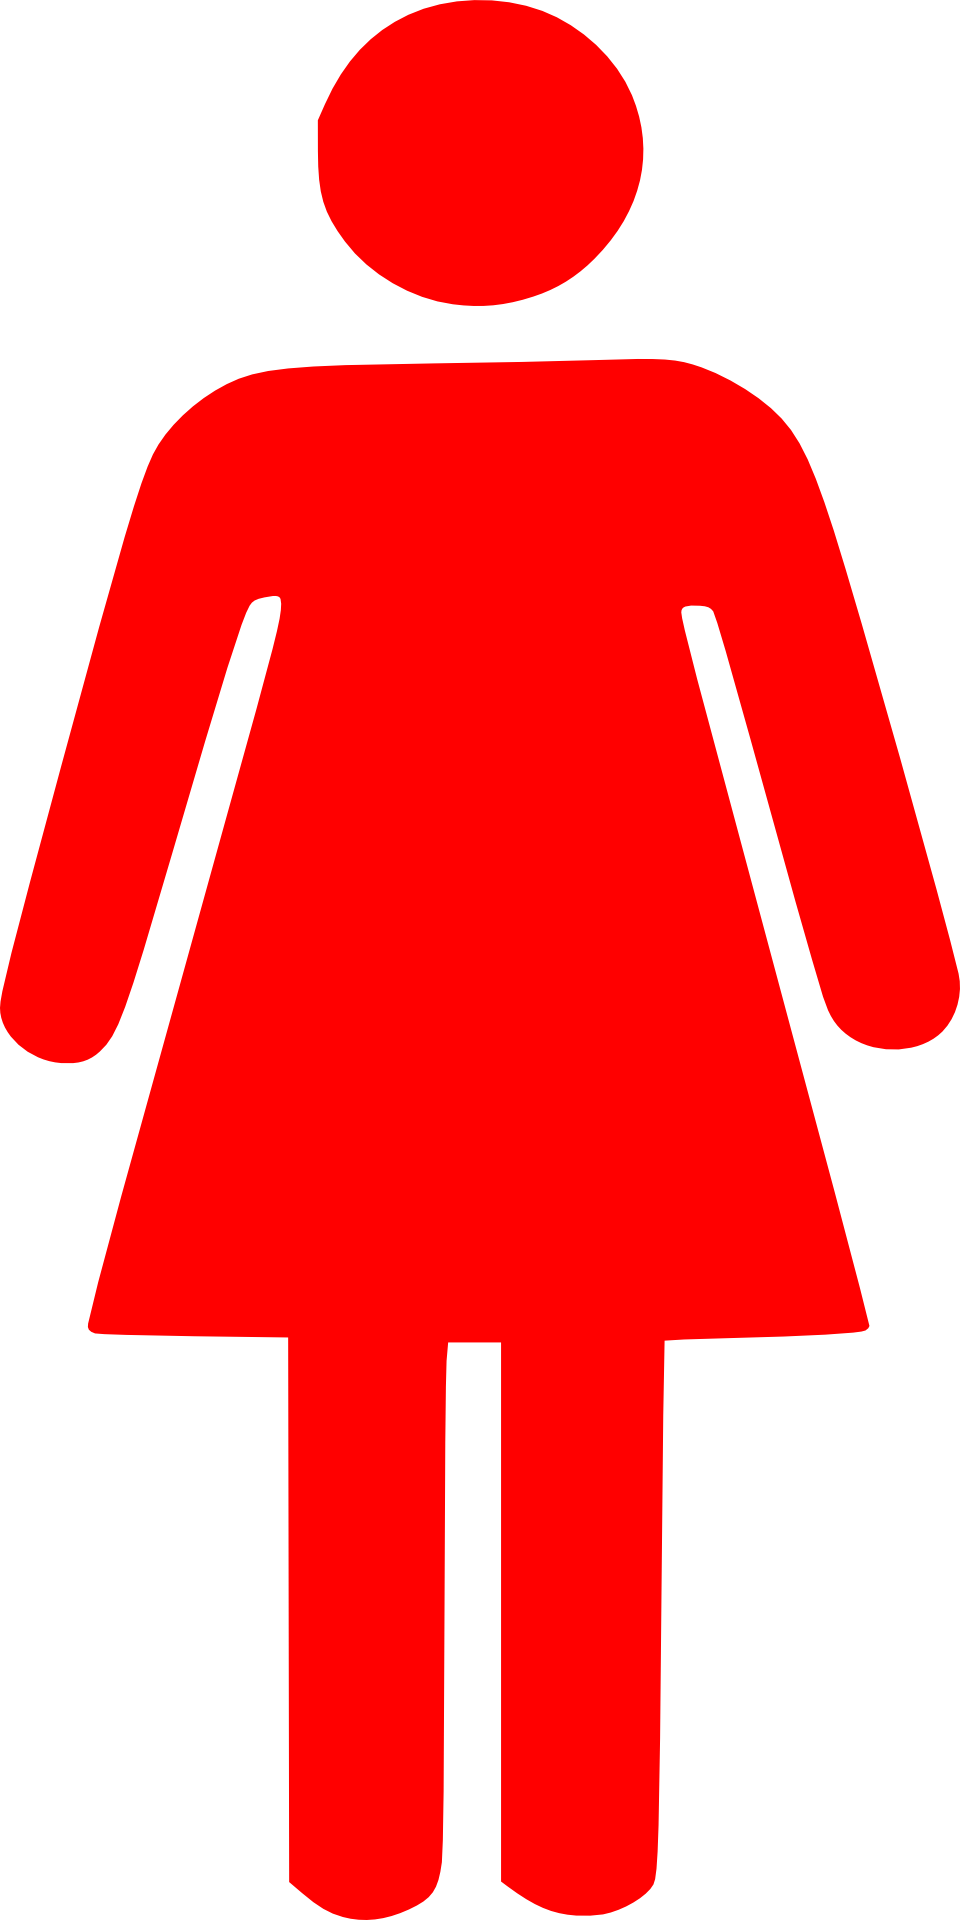 Обозначение девушки. Красный человечек. Символ женщины. Знак «туалет женский». Человечек красного цвета.